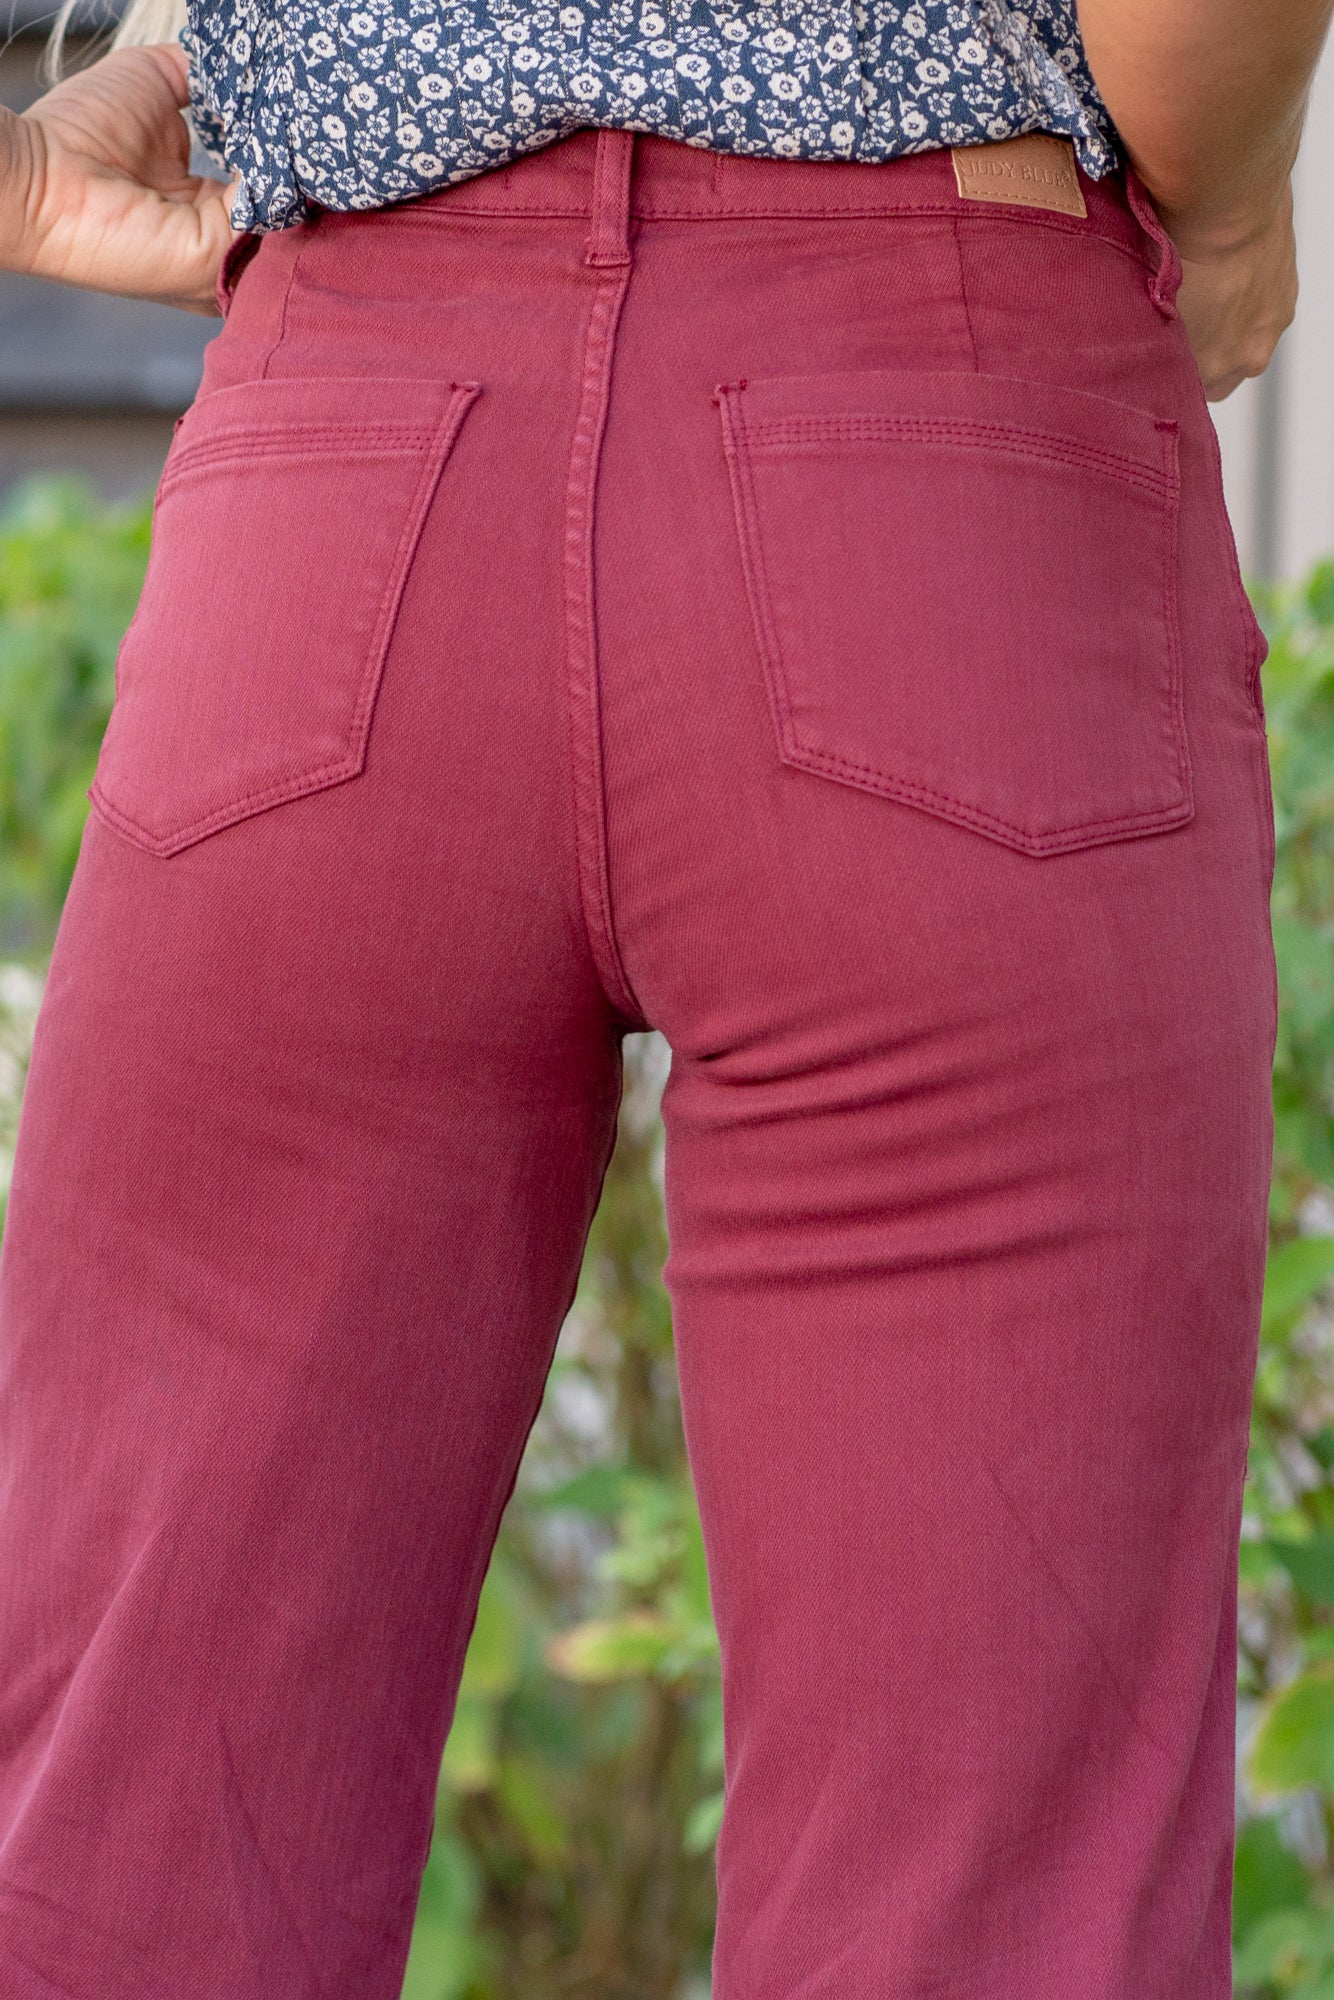 Women's Flare Pants for sale in Belfast